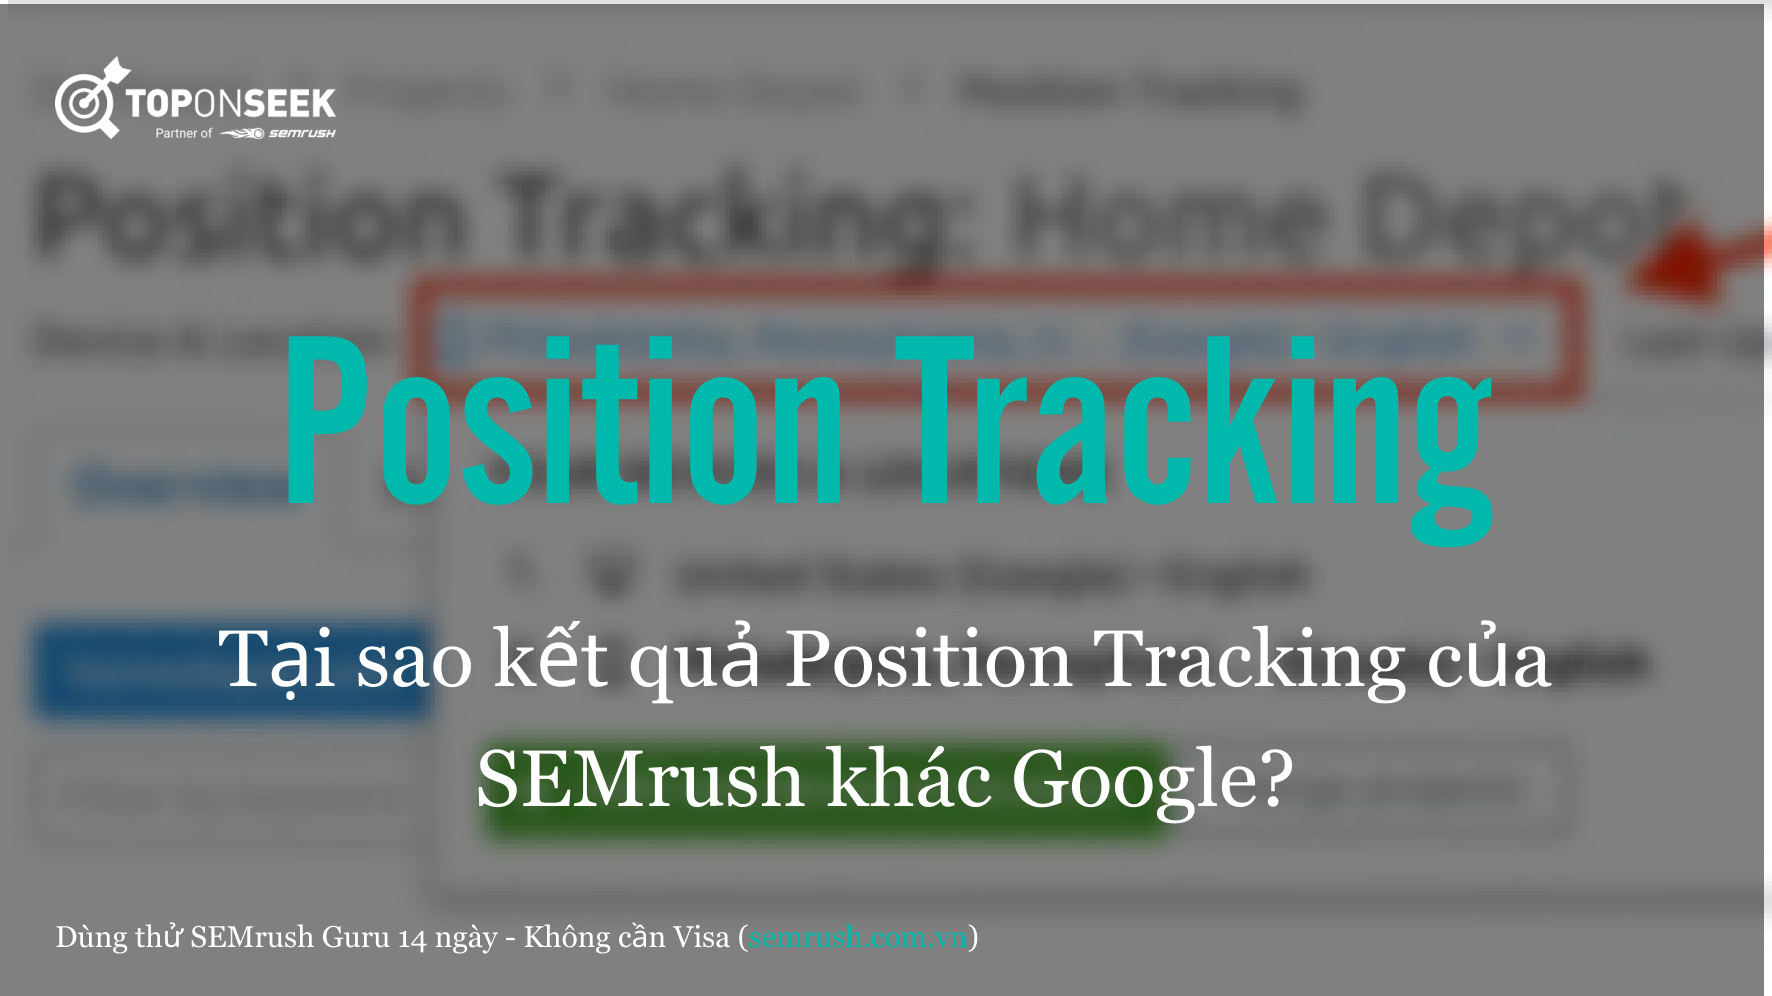 Tại sao kết quả Position Tracking của SEMrush khác Google?